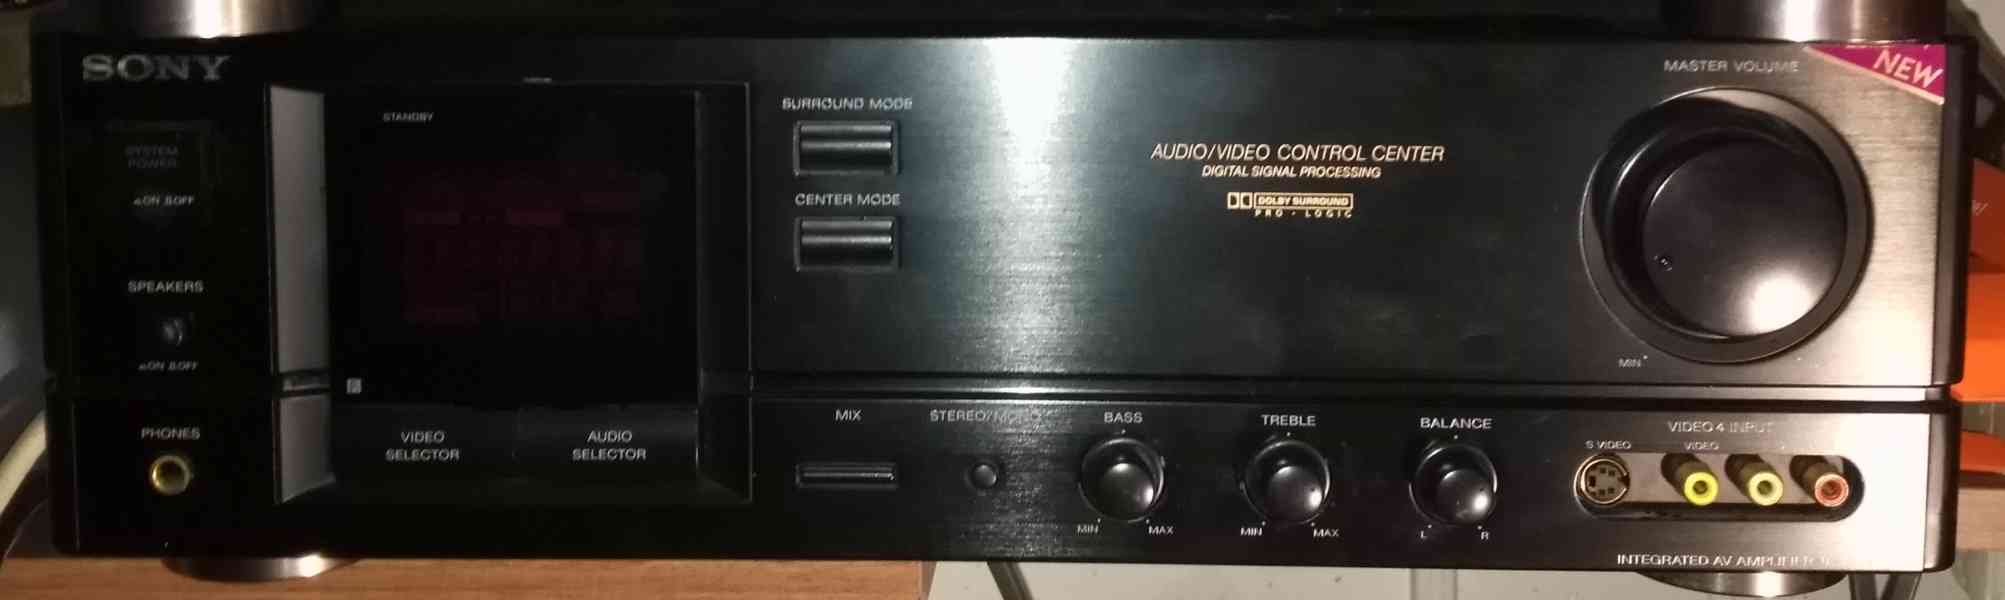 Audio Video Amplifier SONY TA AV 590 - foto 1